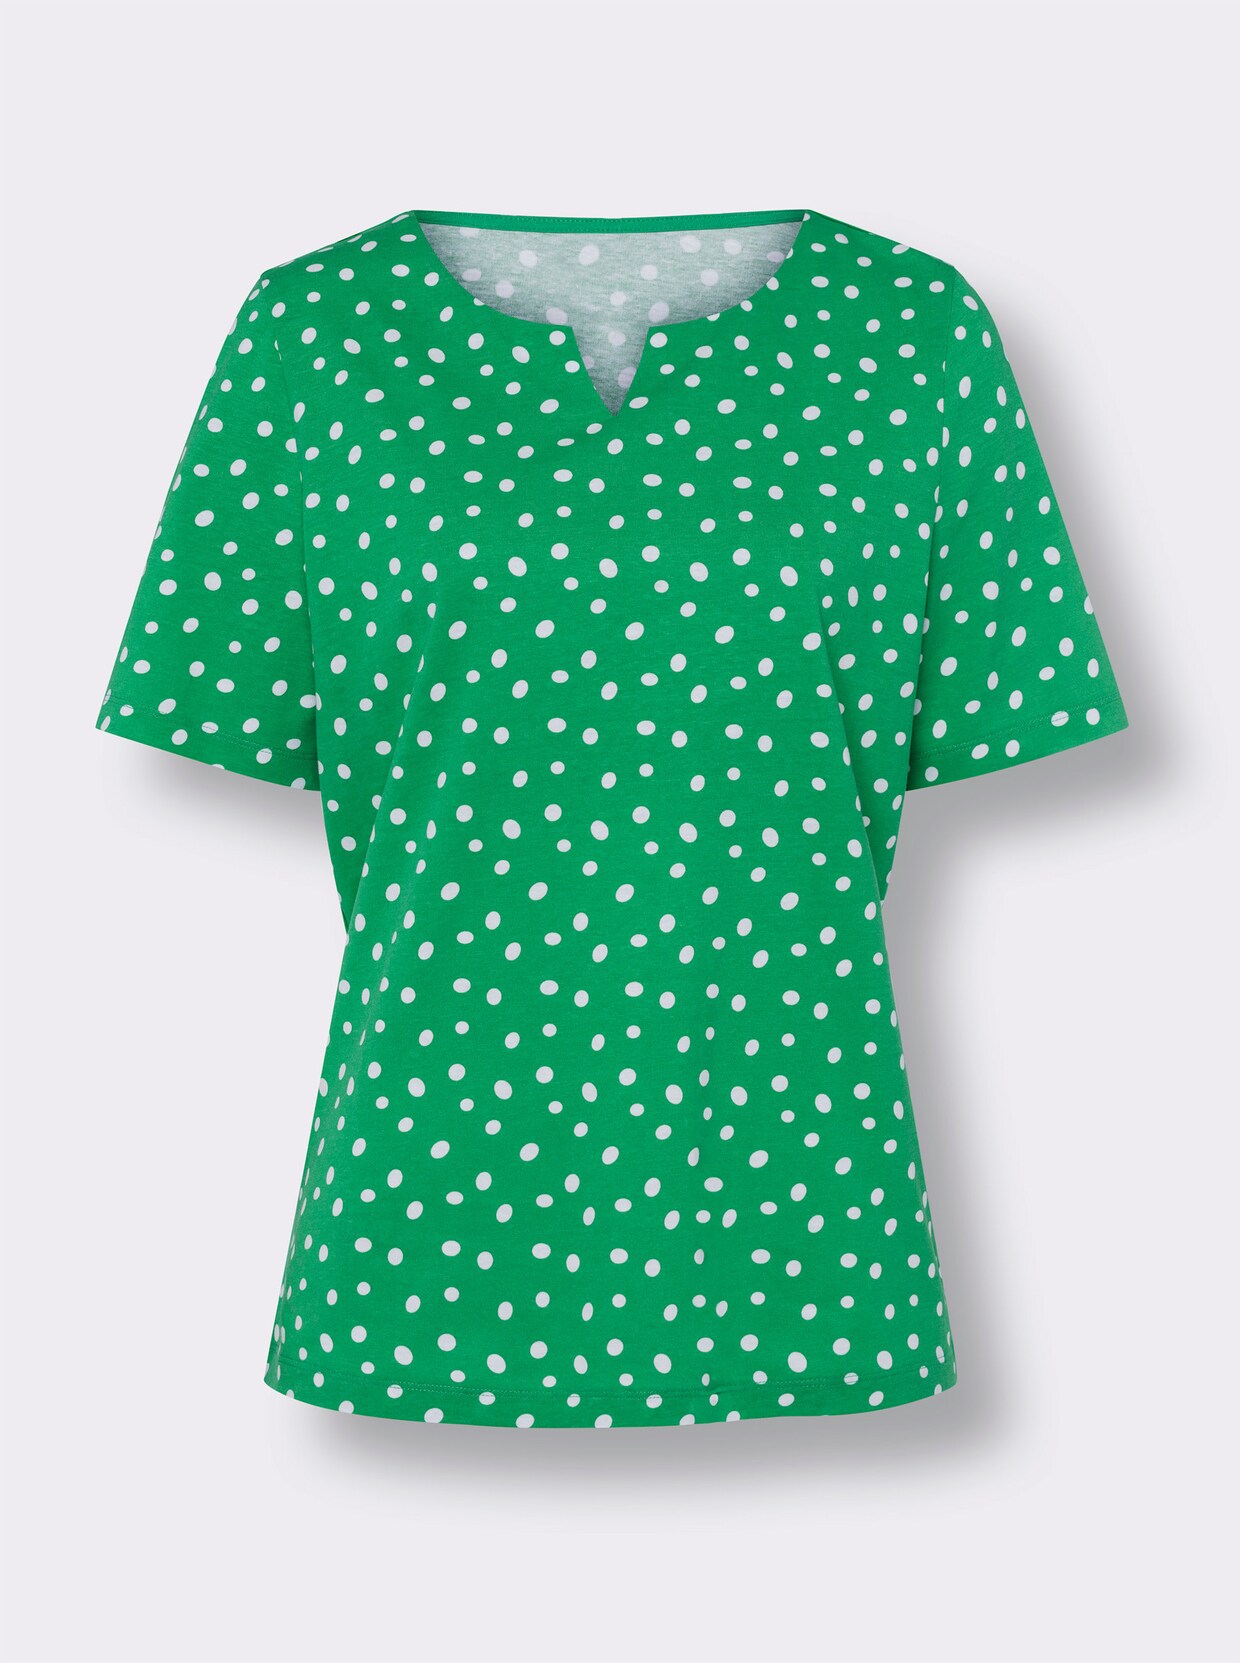 Tričko s krátkým rukávem - trávově zelená-bílá-puntík